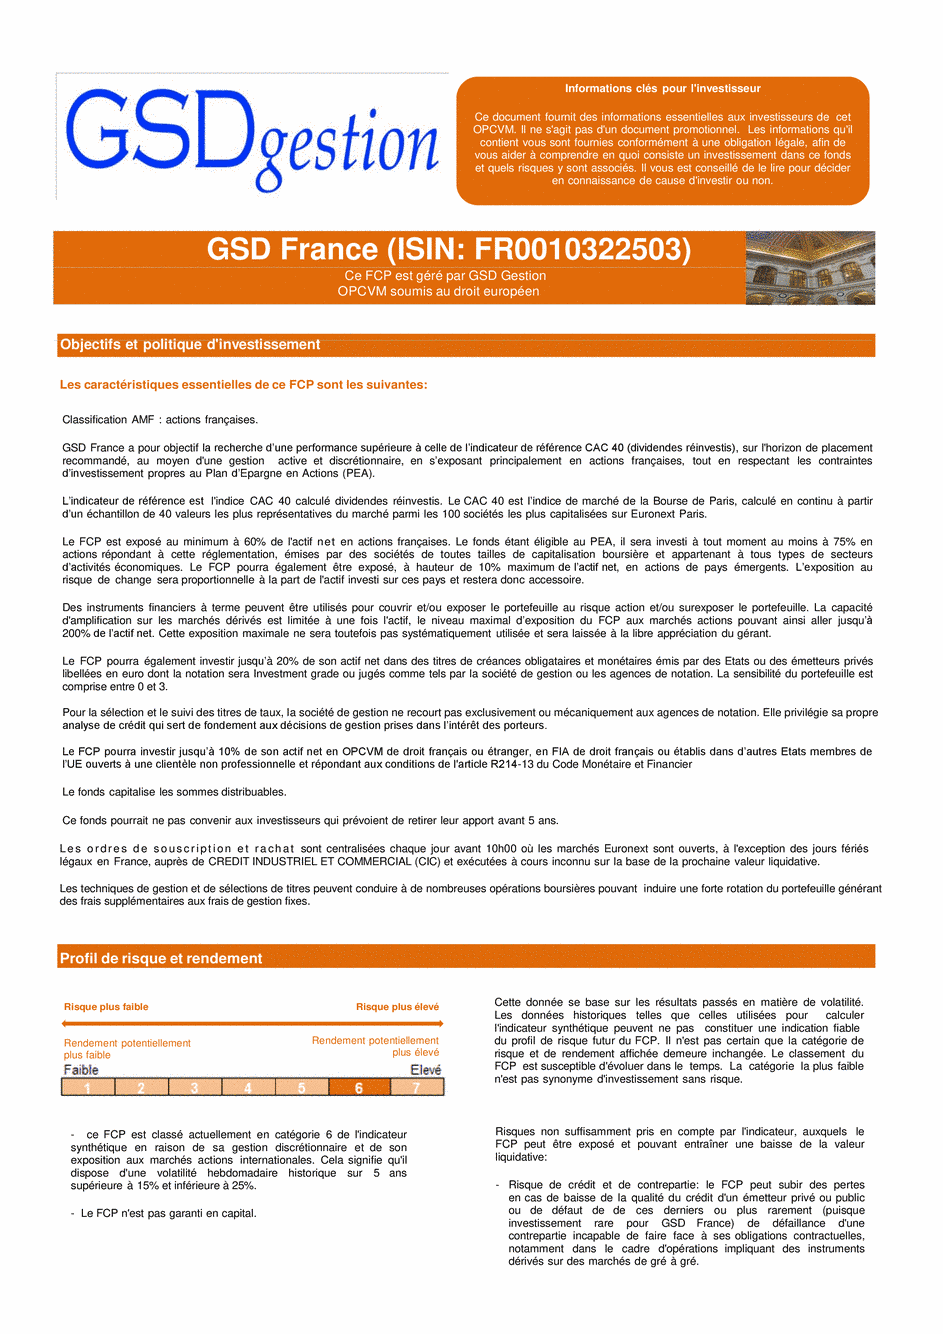 DICI-Prospectus Complet GSD France - 13/01/2021 - Français